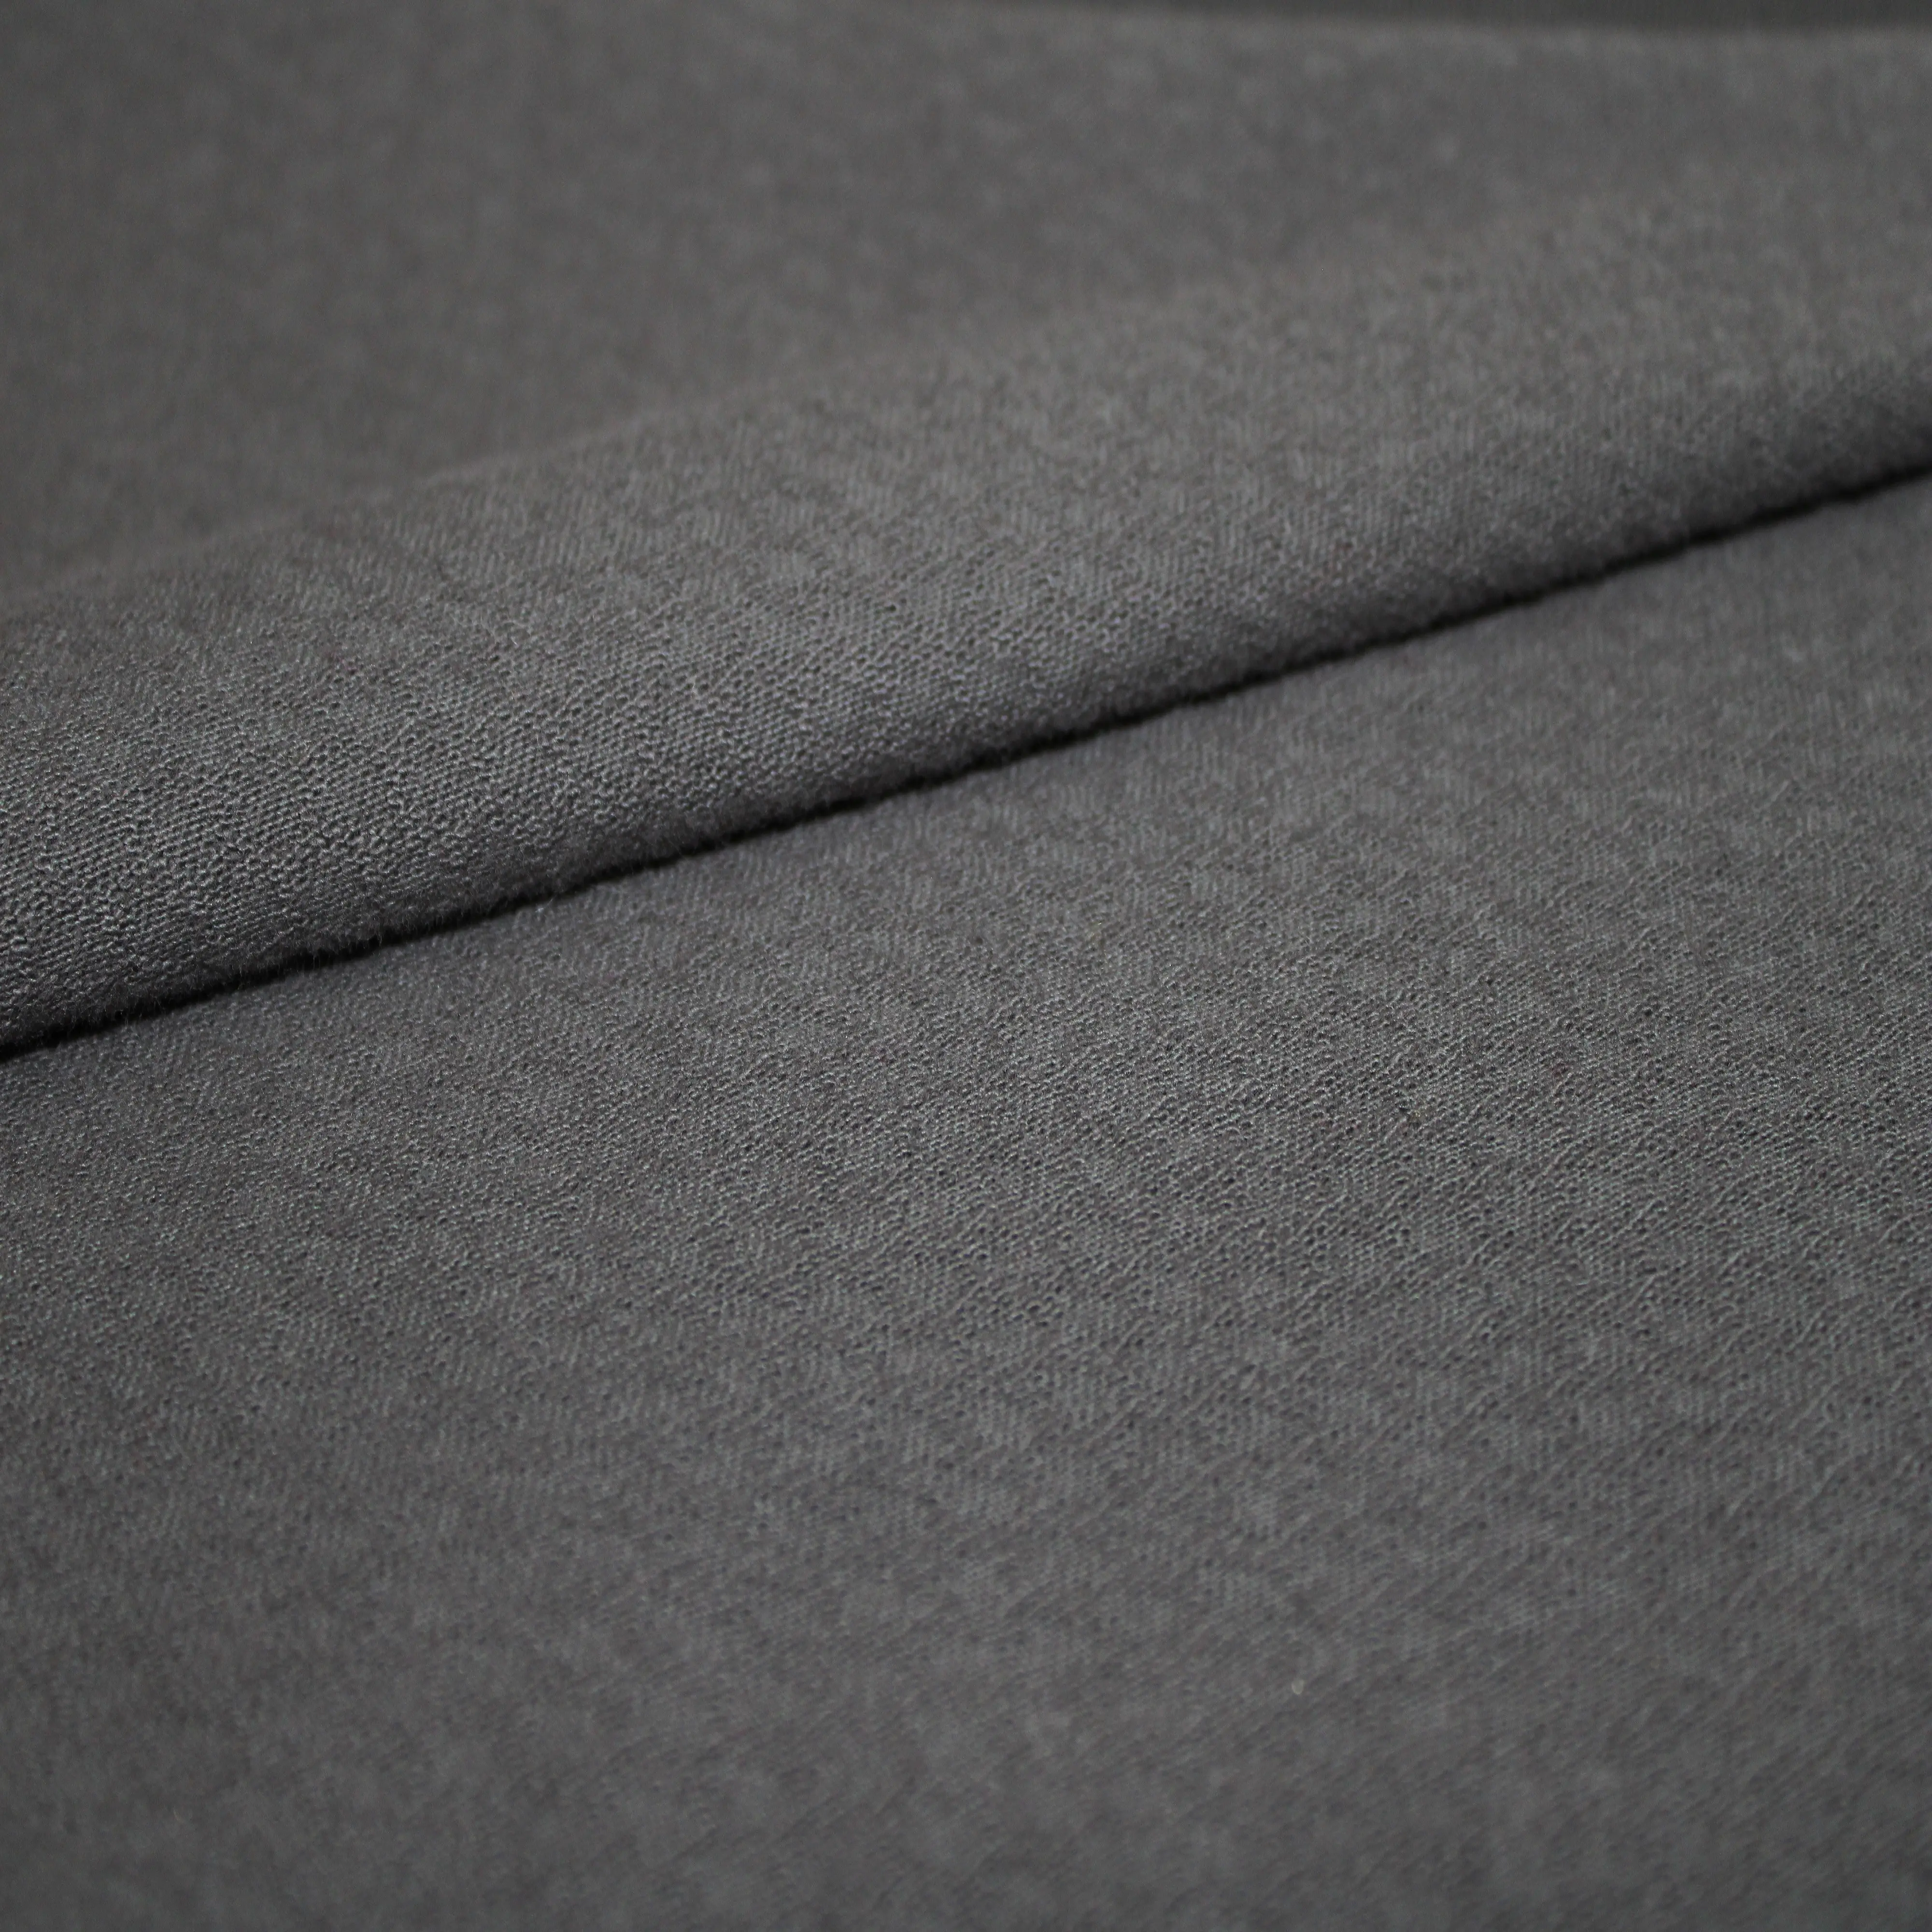 Nuovi arrivi tessuto a maglia in maglia di puro cotone 100% traspirante personalizzato di alta qualità per abbigliamento abbigliamento abbigliamento